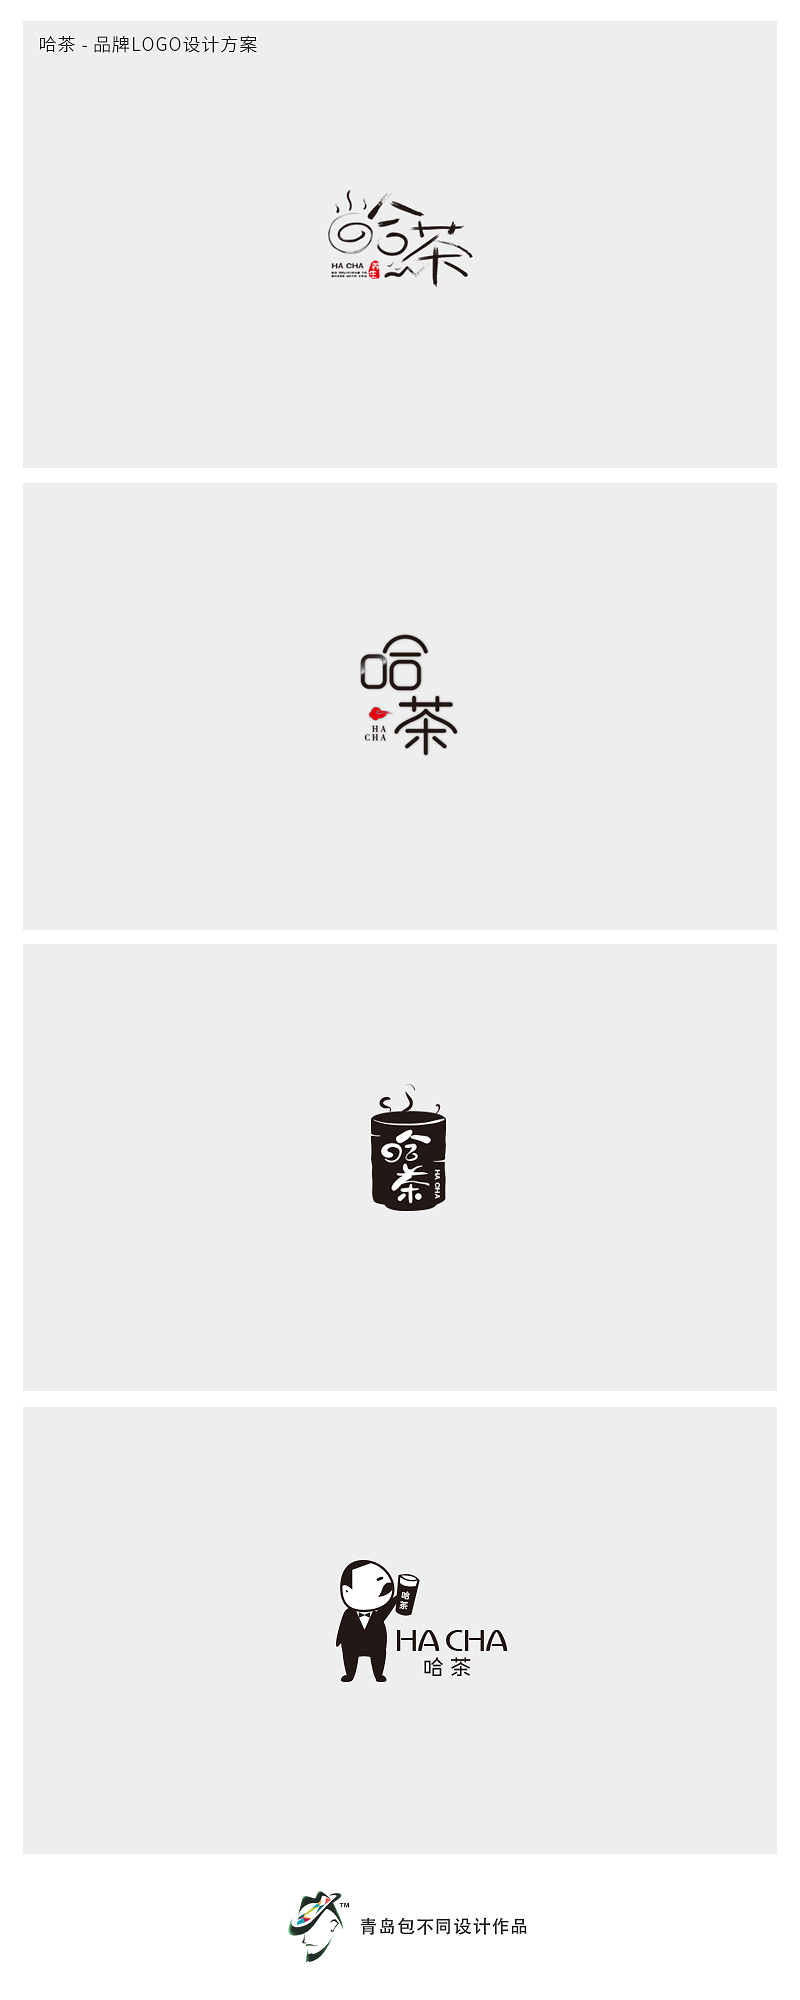 青岛本土茶饮-哈茶logo设计方案